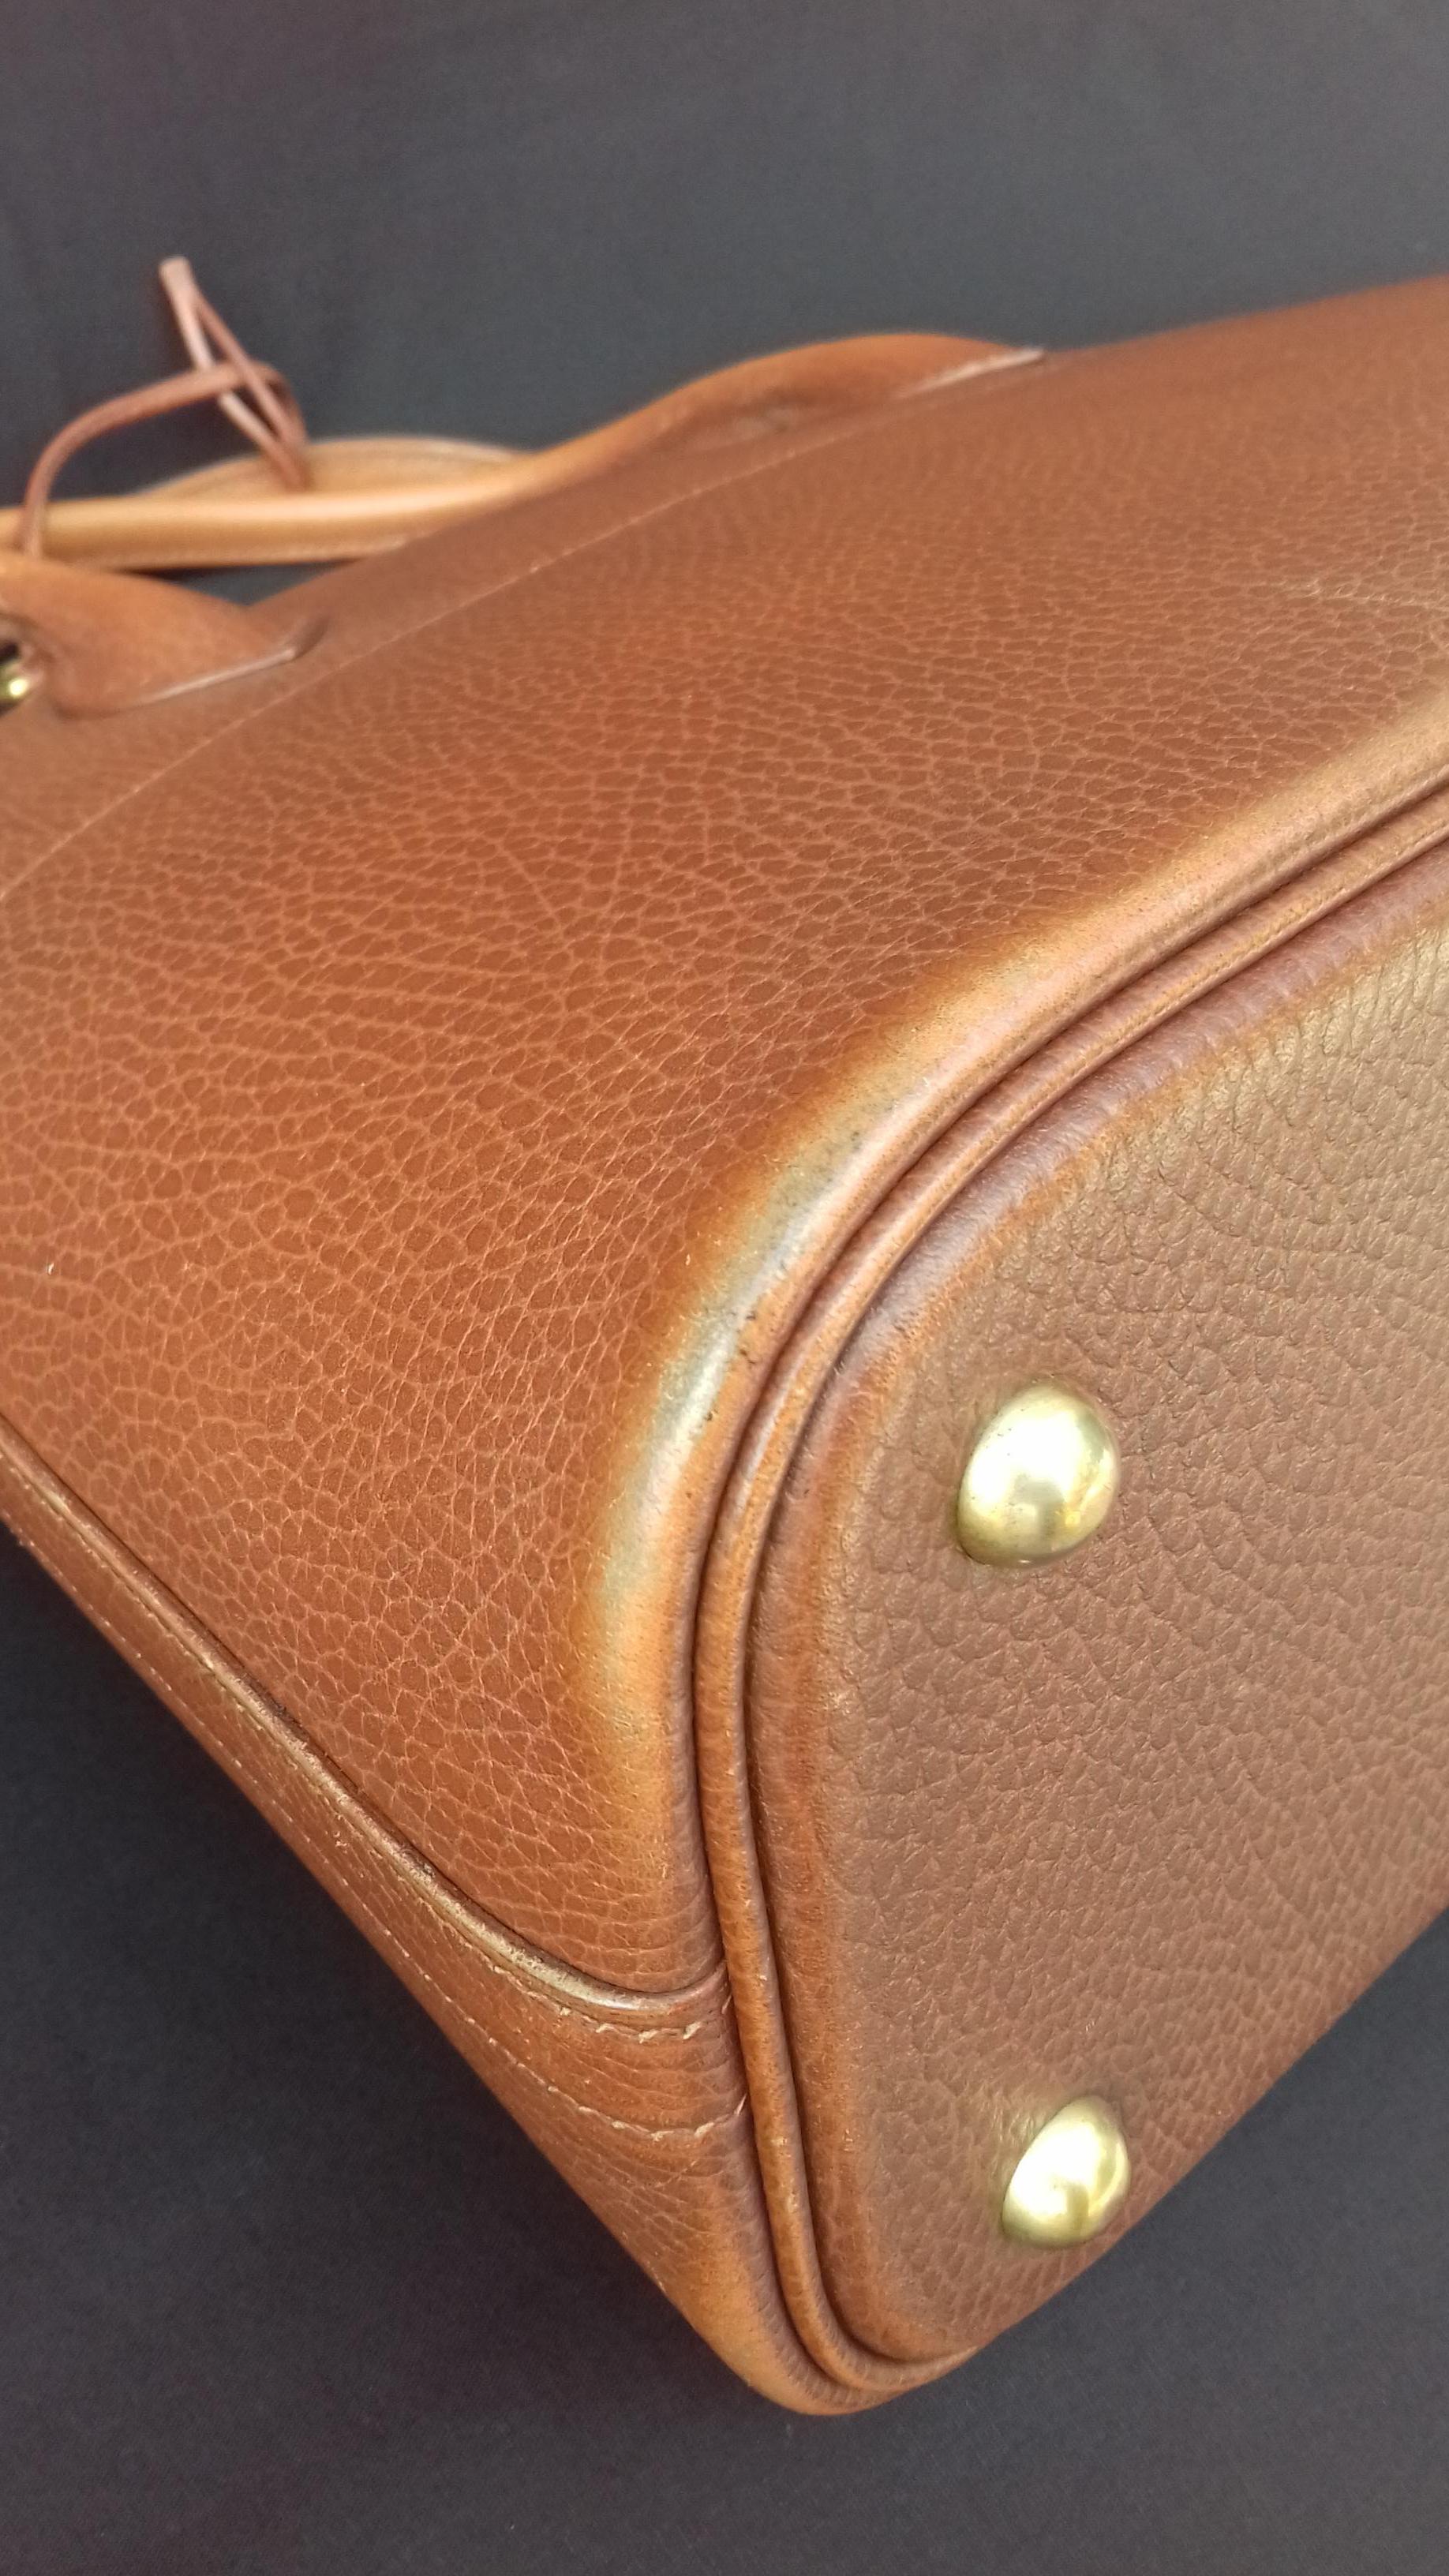 Hermès Vintage Bolide Bag 2 ways Brown Leather Golden Hdw 33 cm 13